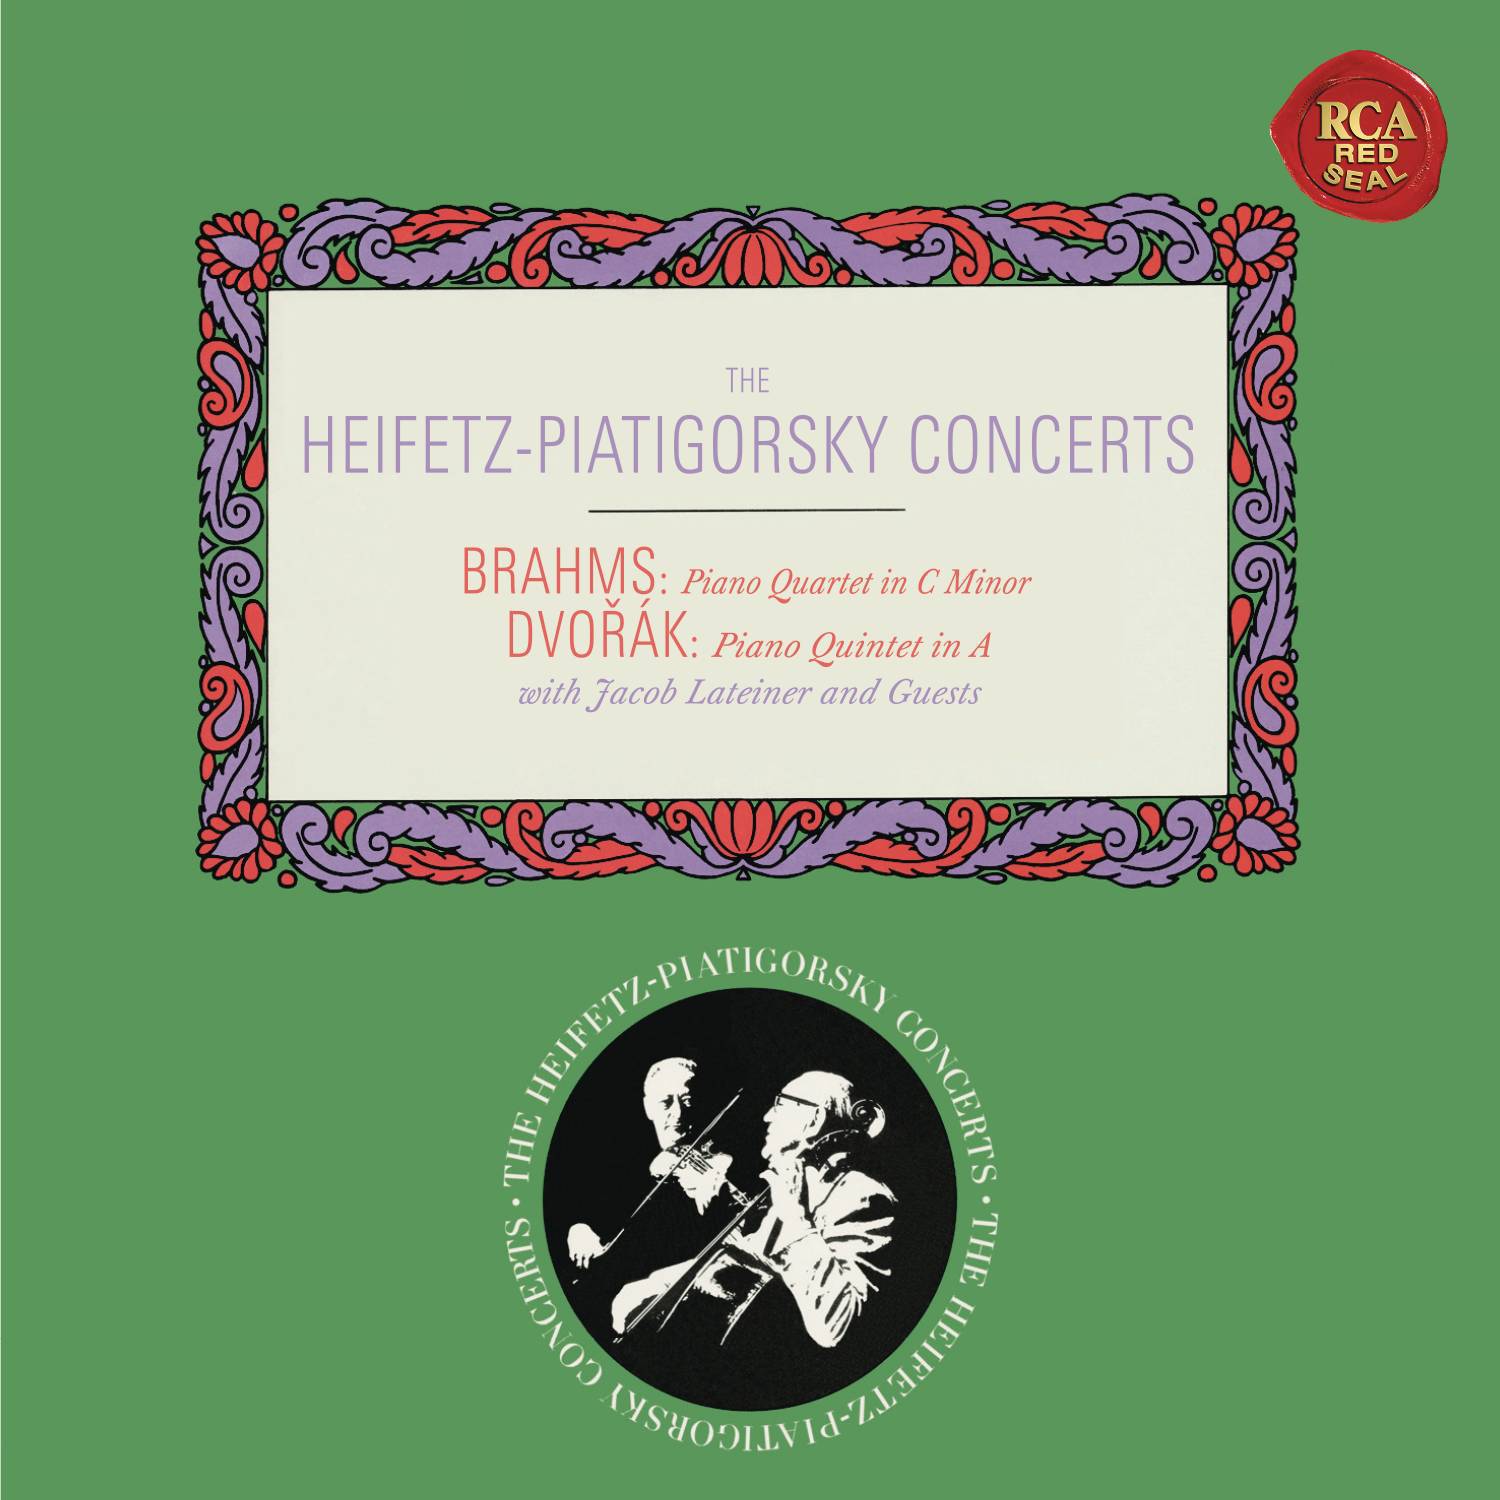 Brahms: Piano Quartet No. 3 in C Minor, Op. 60 - Dvorák: Piano Quintet No. 2 in A Major, Op. 81 - Heifetz Remastered